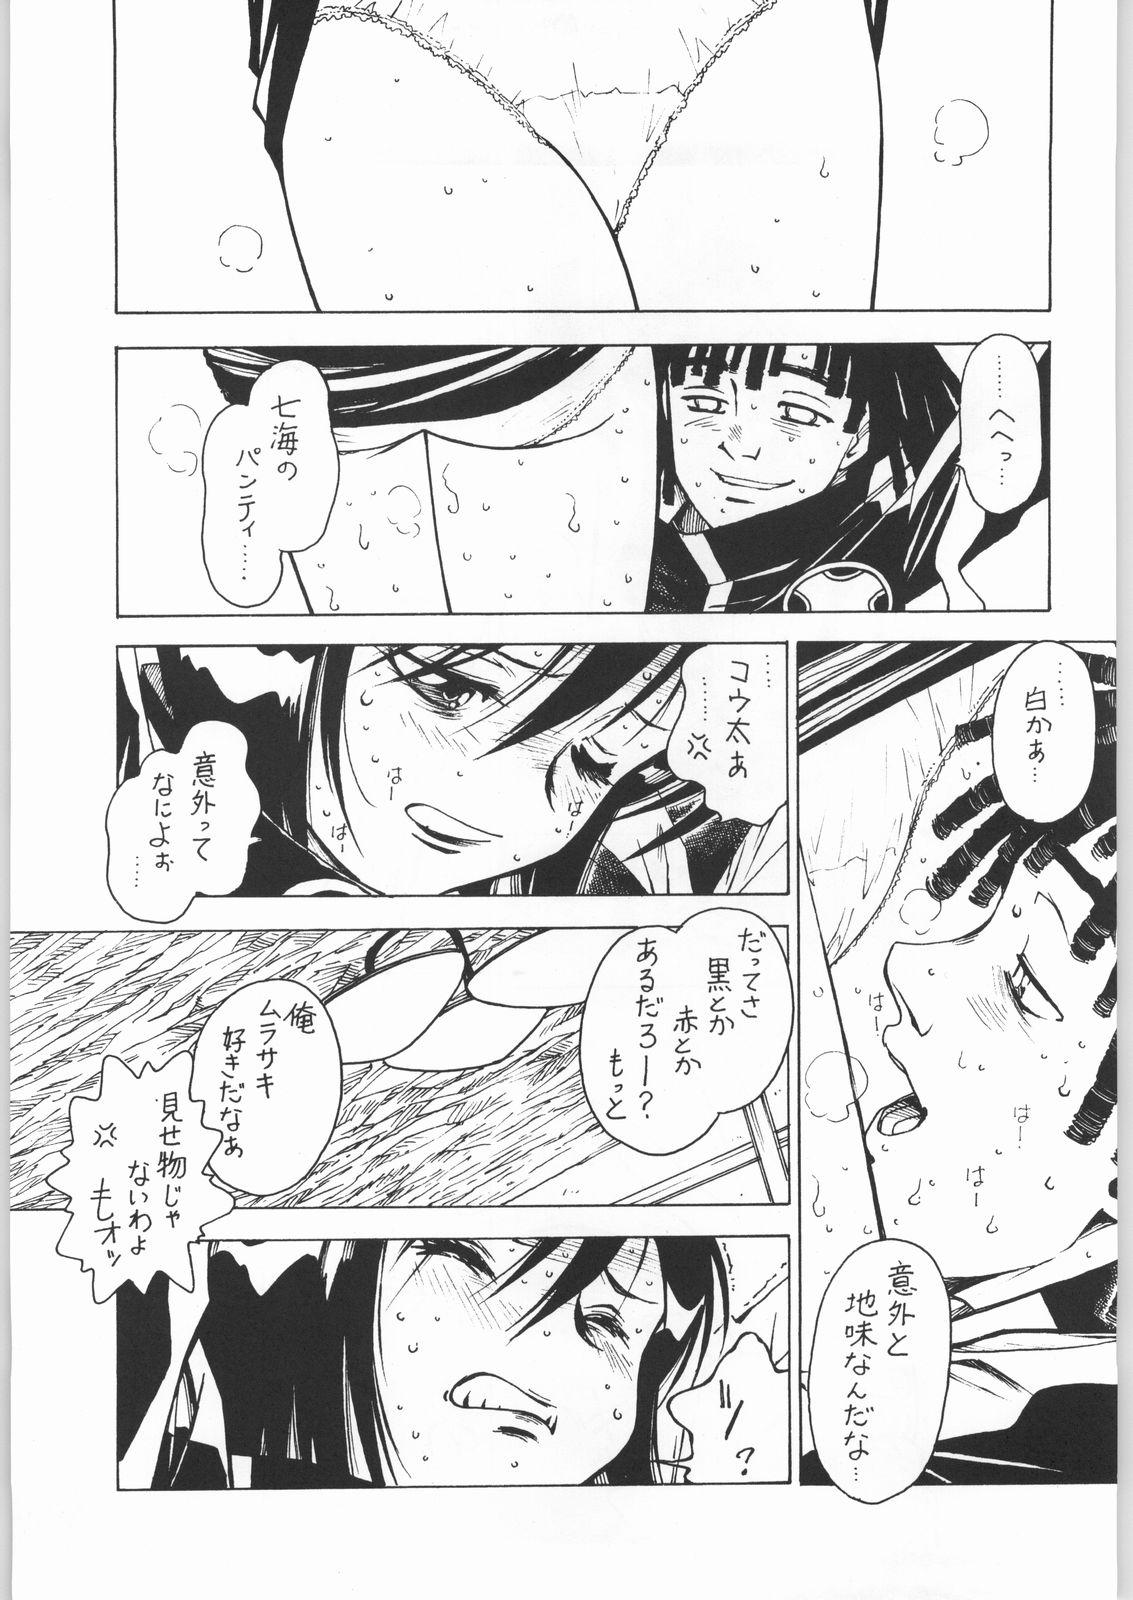 Oralsex Nanami Tougarashi - Ninpuu sentai hurricaneger Animation - Page 6